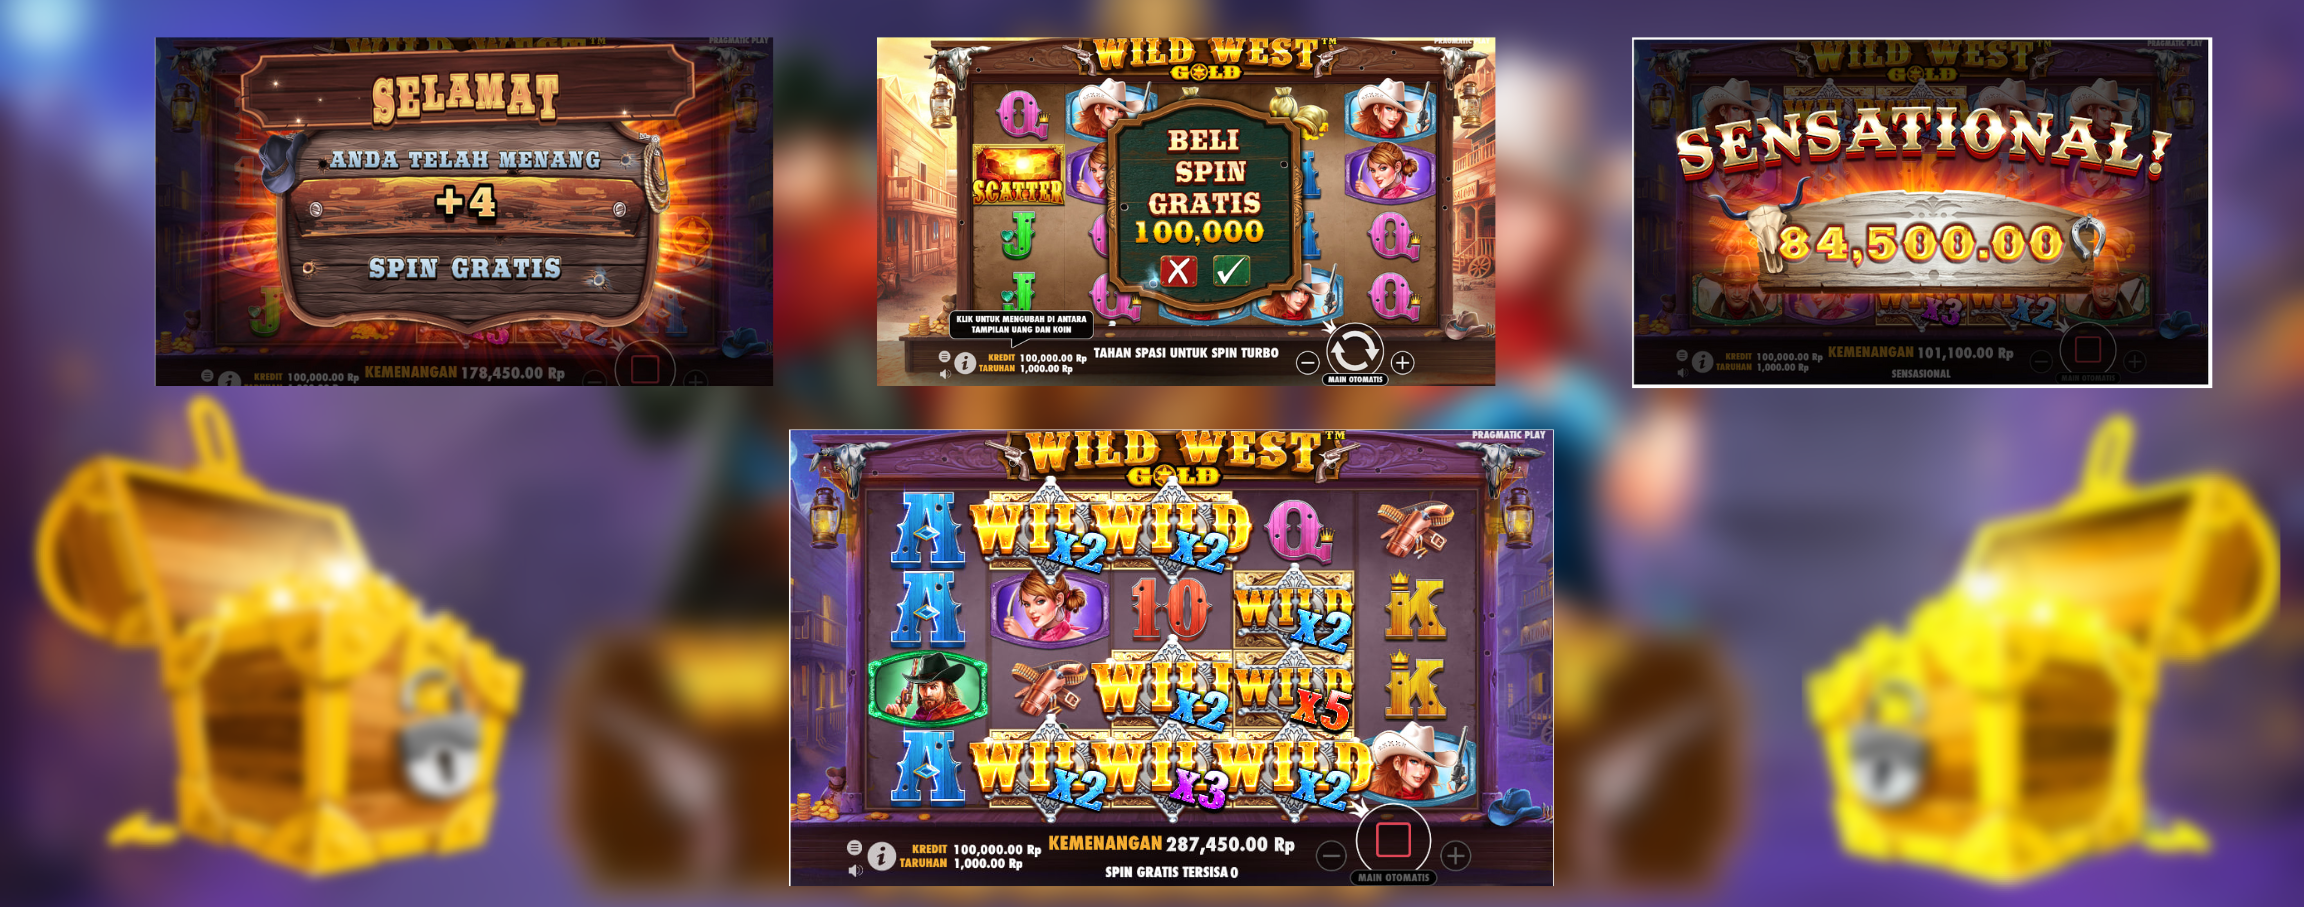 Slot Demo Wild West Gold